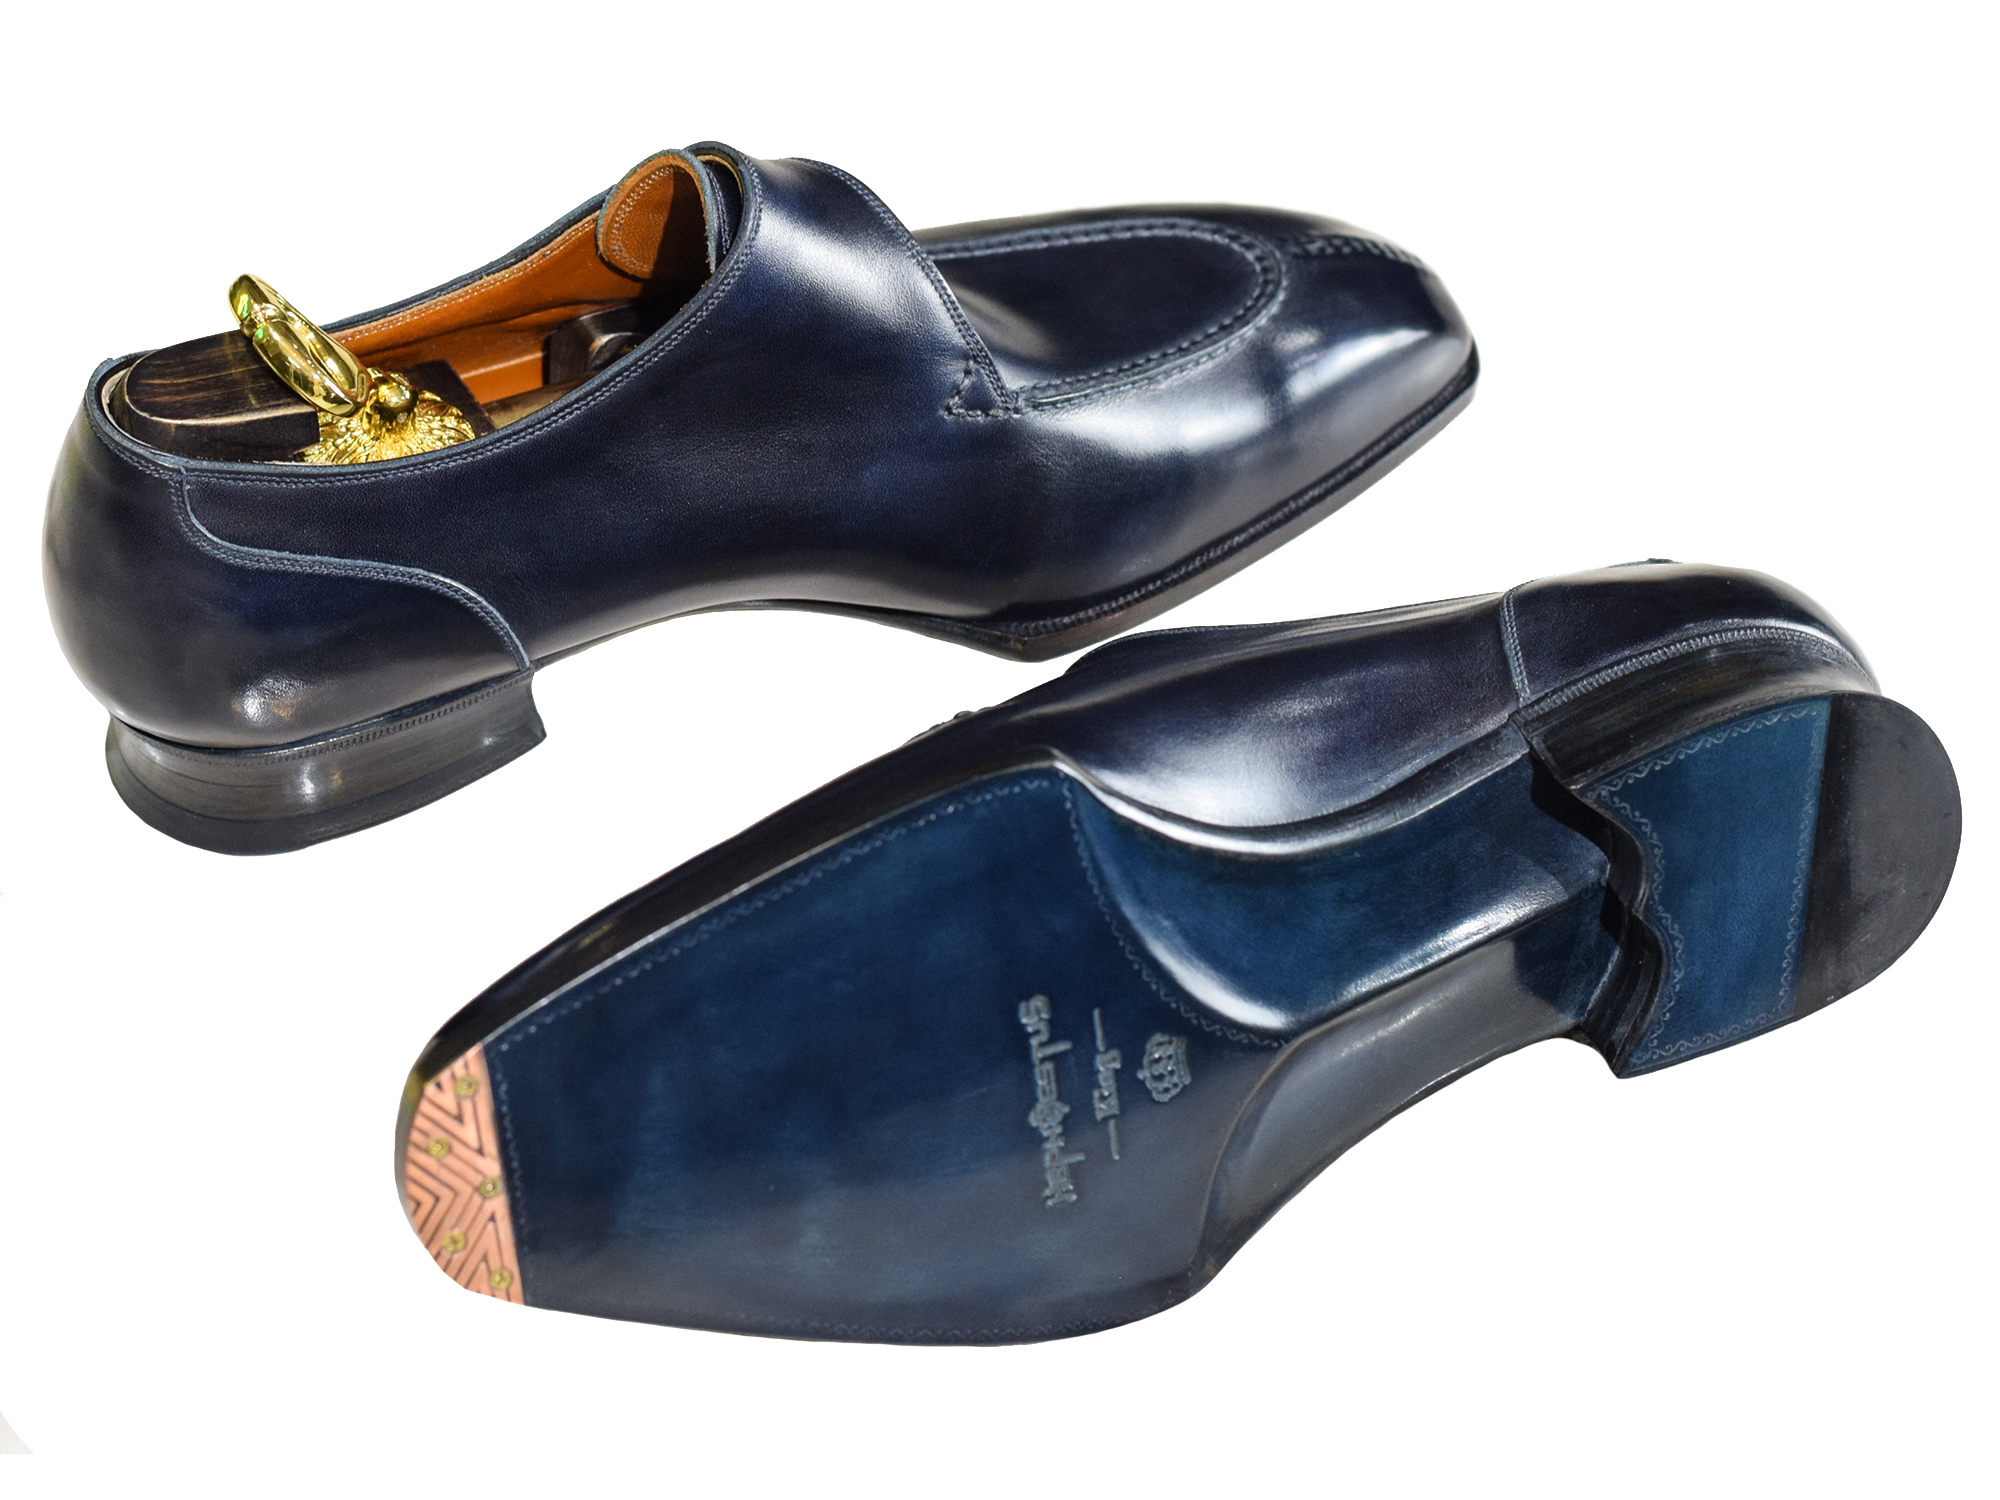 MTO Single monkstrap shoes |Optimum line|